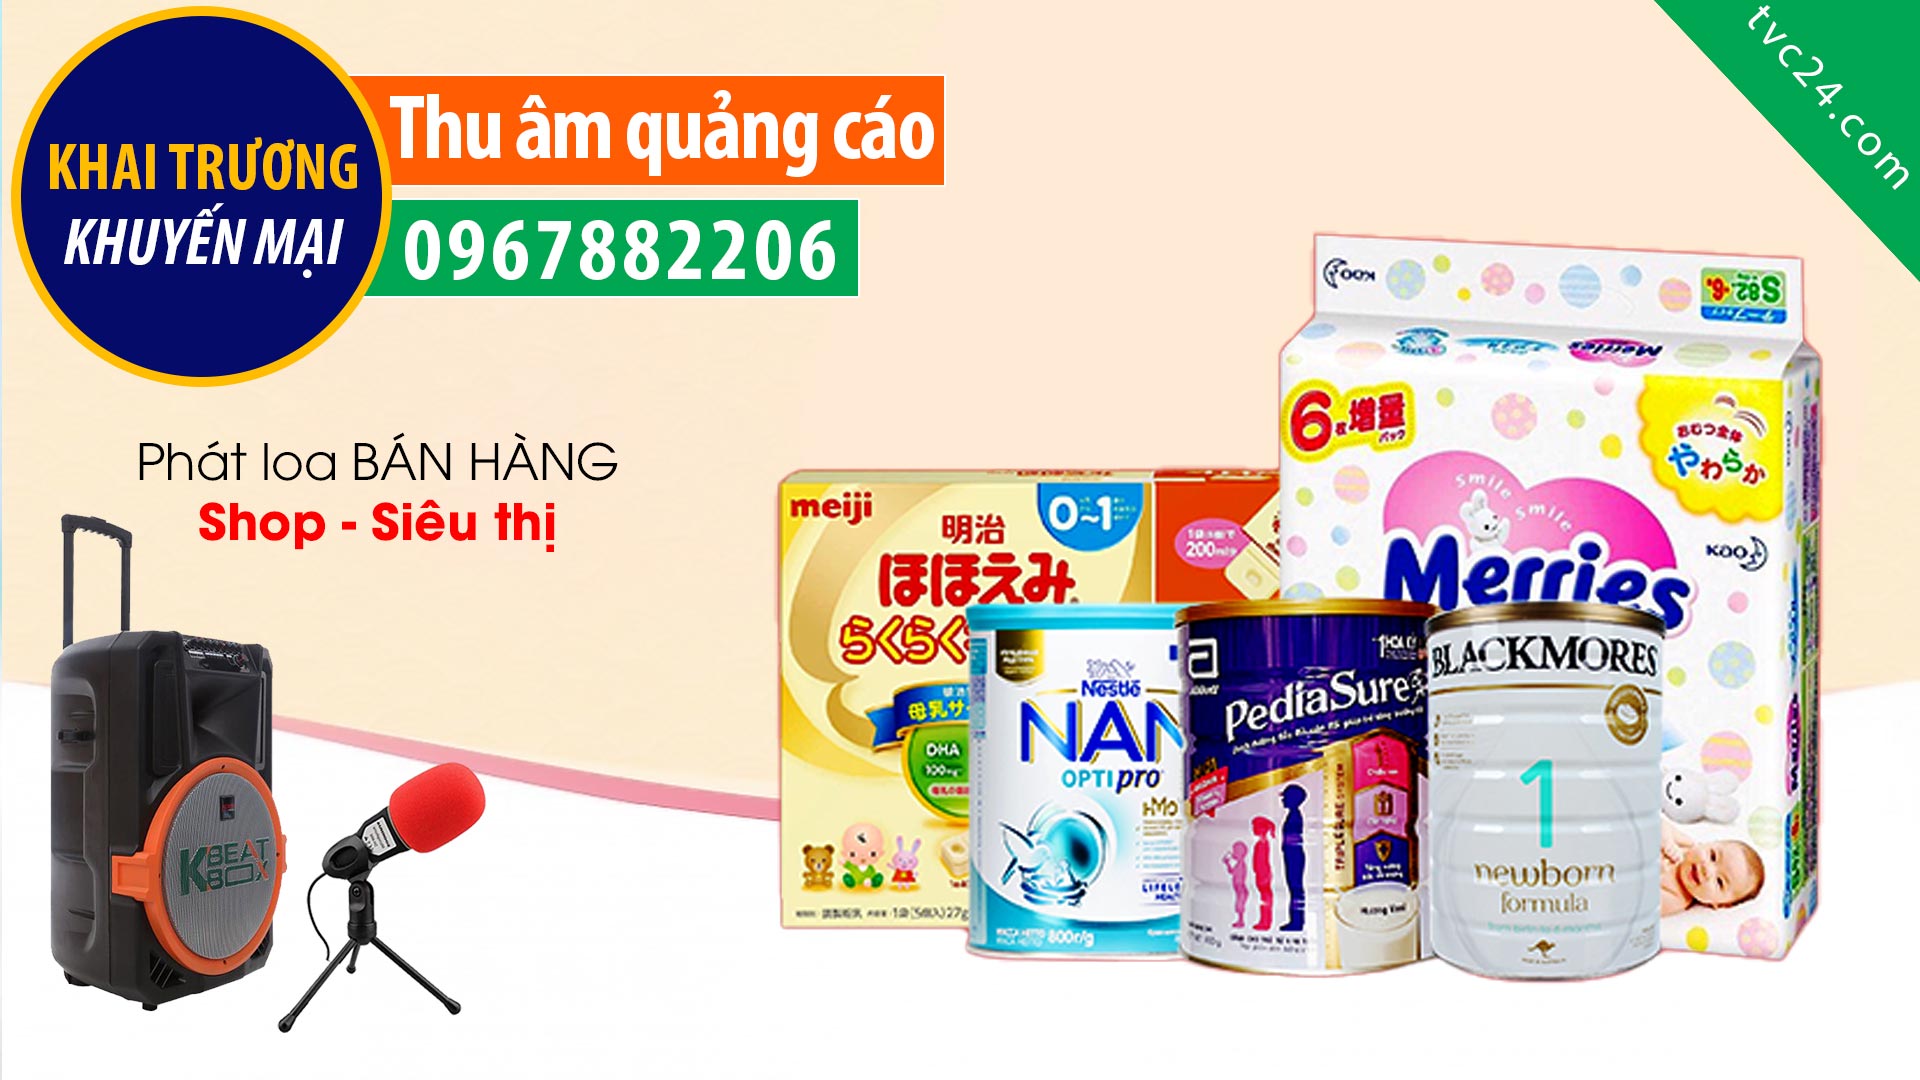  Thu âm quảng cáo khai trương Shop Bỉm sữa Minh Phượng baby